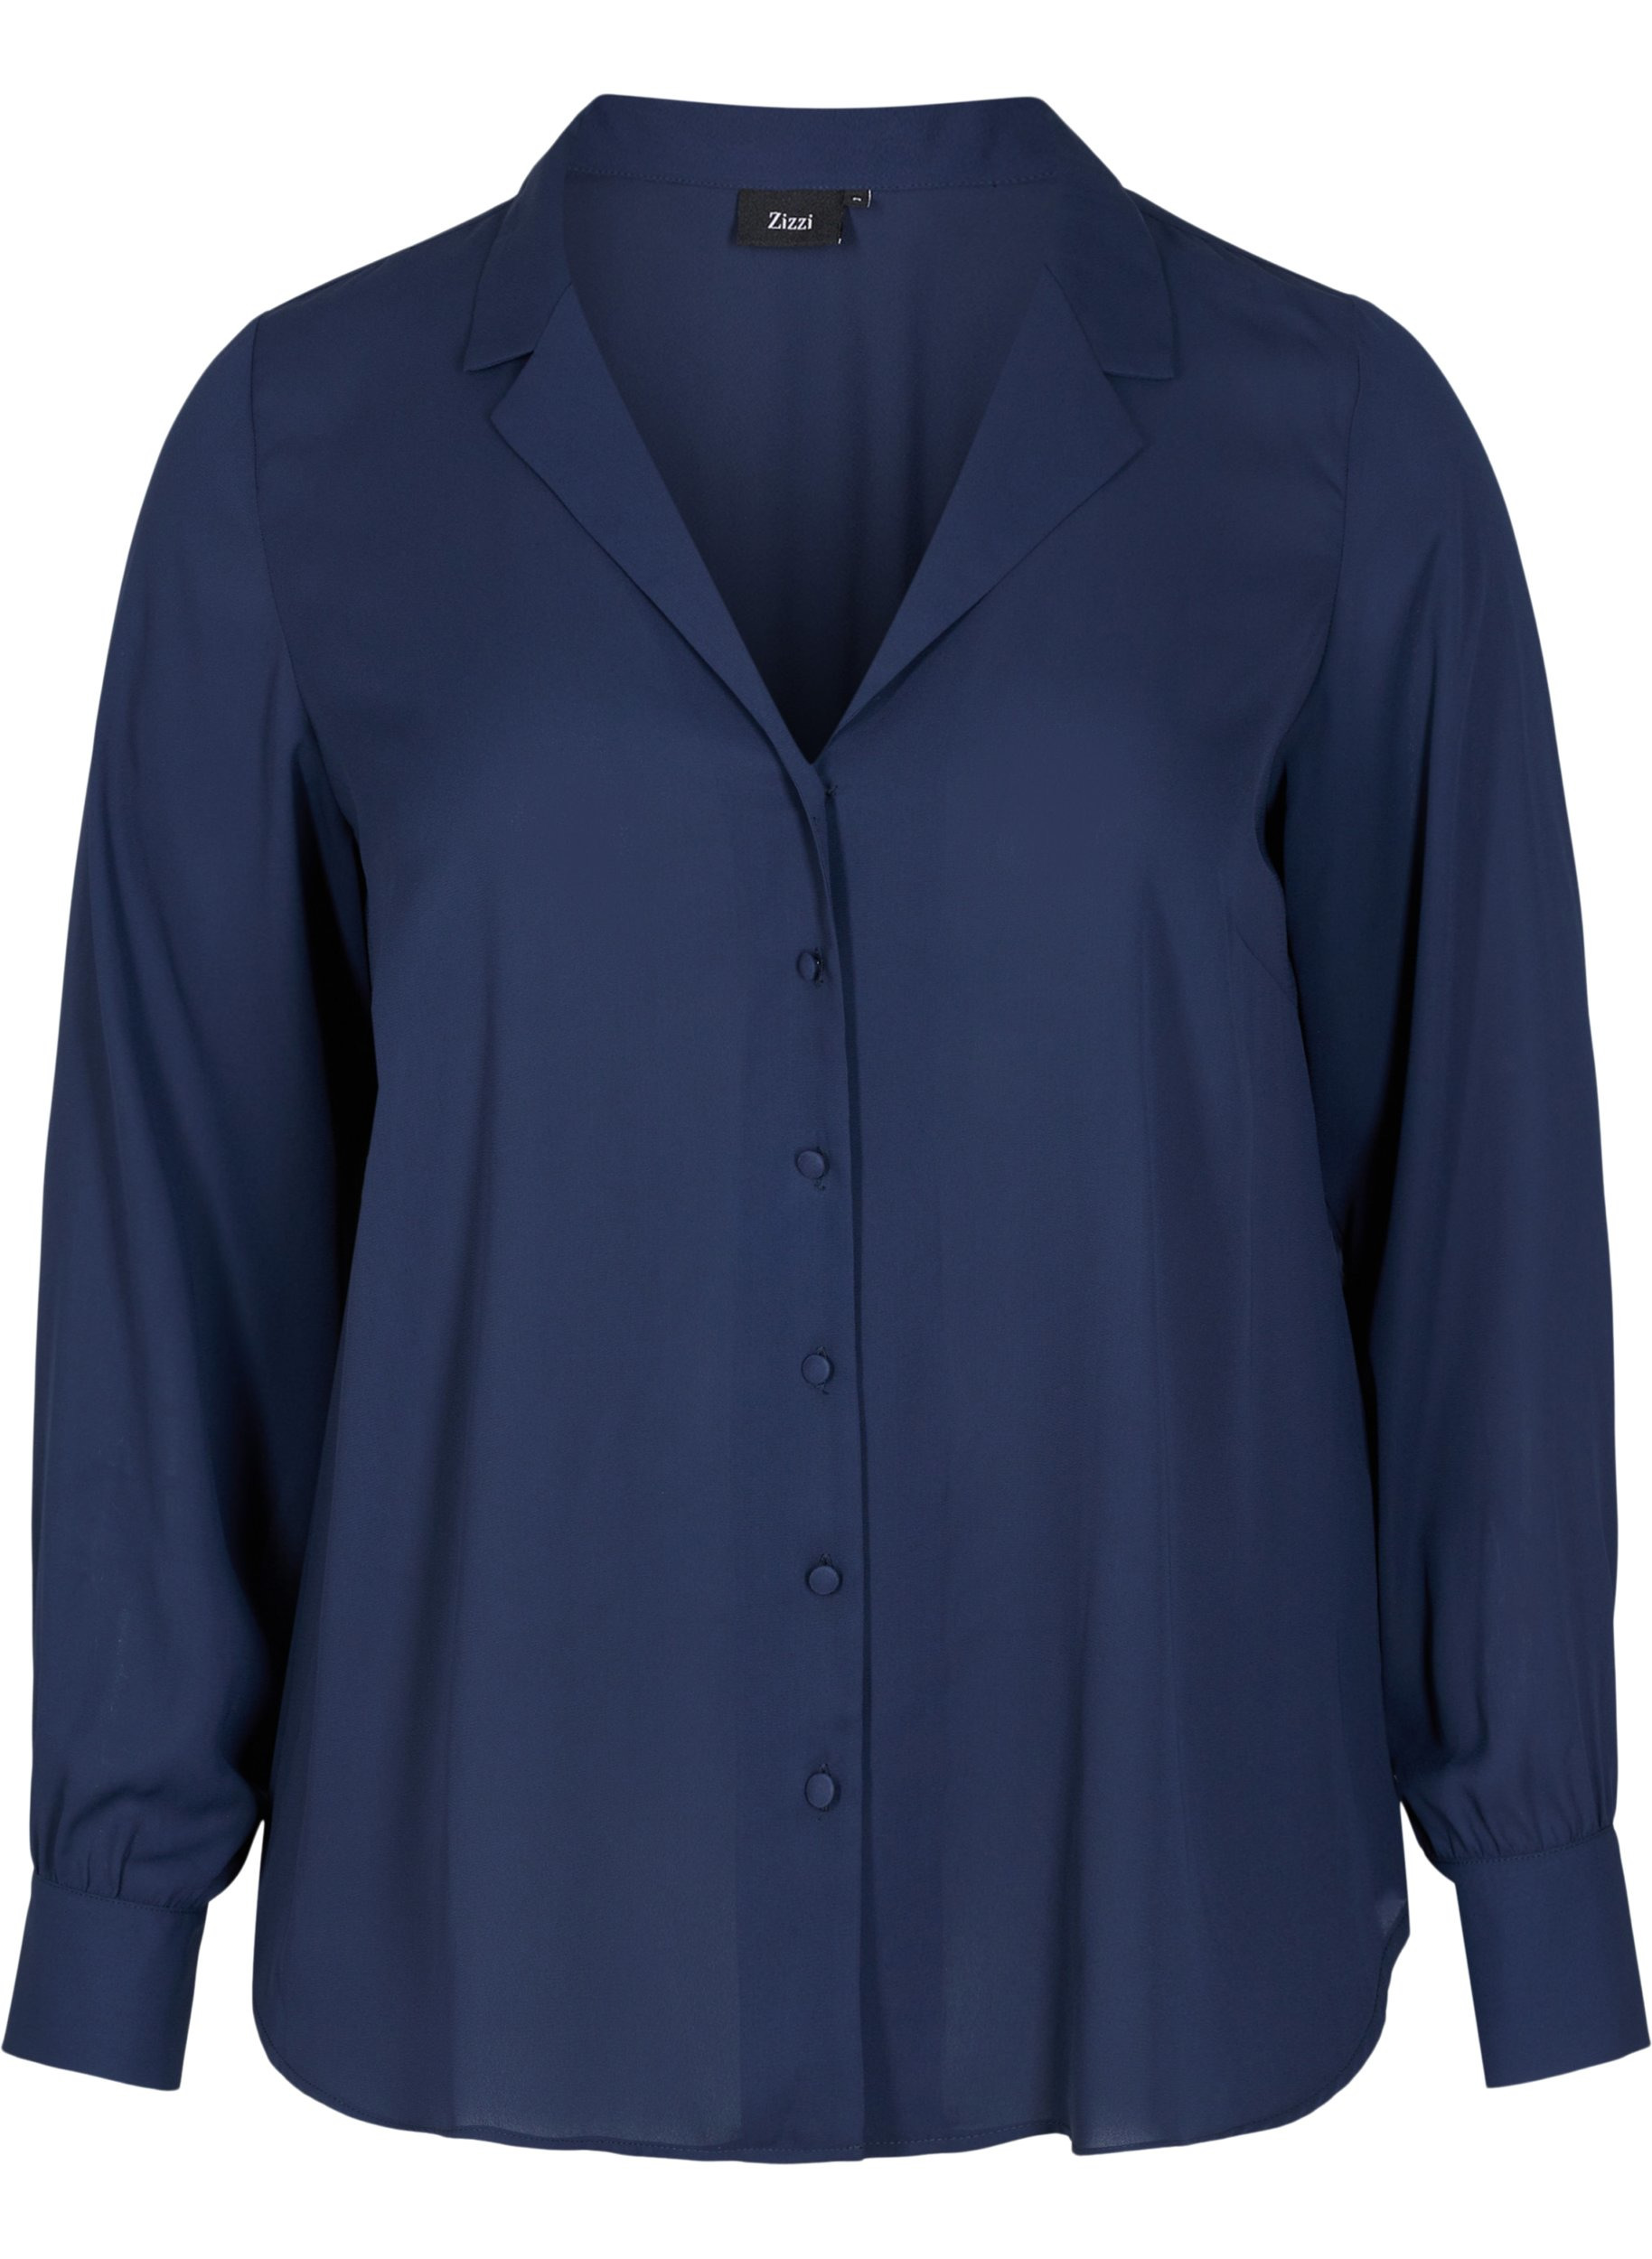 Hemdbluse mit Knopfverschluss und V-Ausschnitt, Navy Blazer